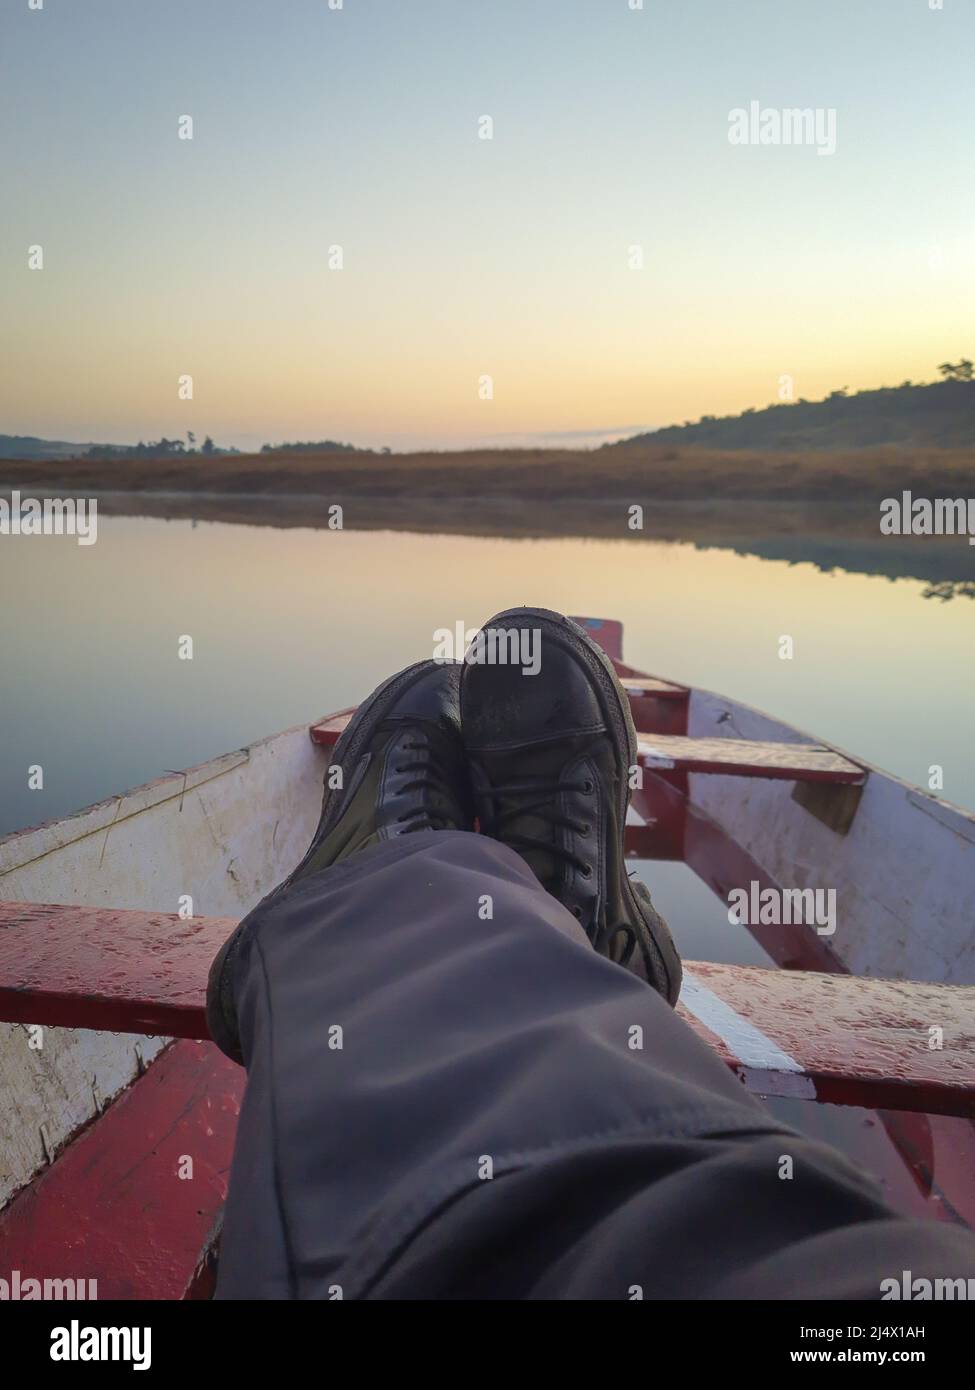 el hombre se embarcan en un tradicional barco de madera en un lago tranquilo con un espectacular amanecer y colorido reflejo del cielo Foto de stock